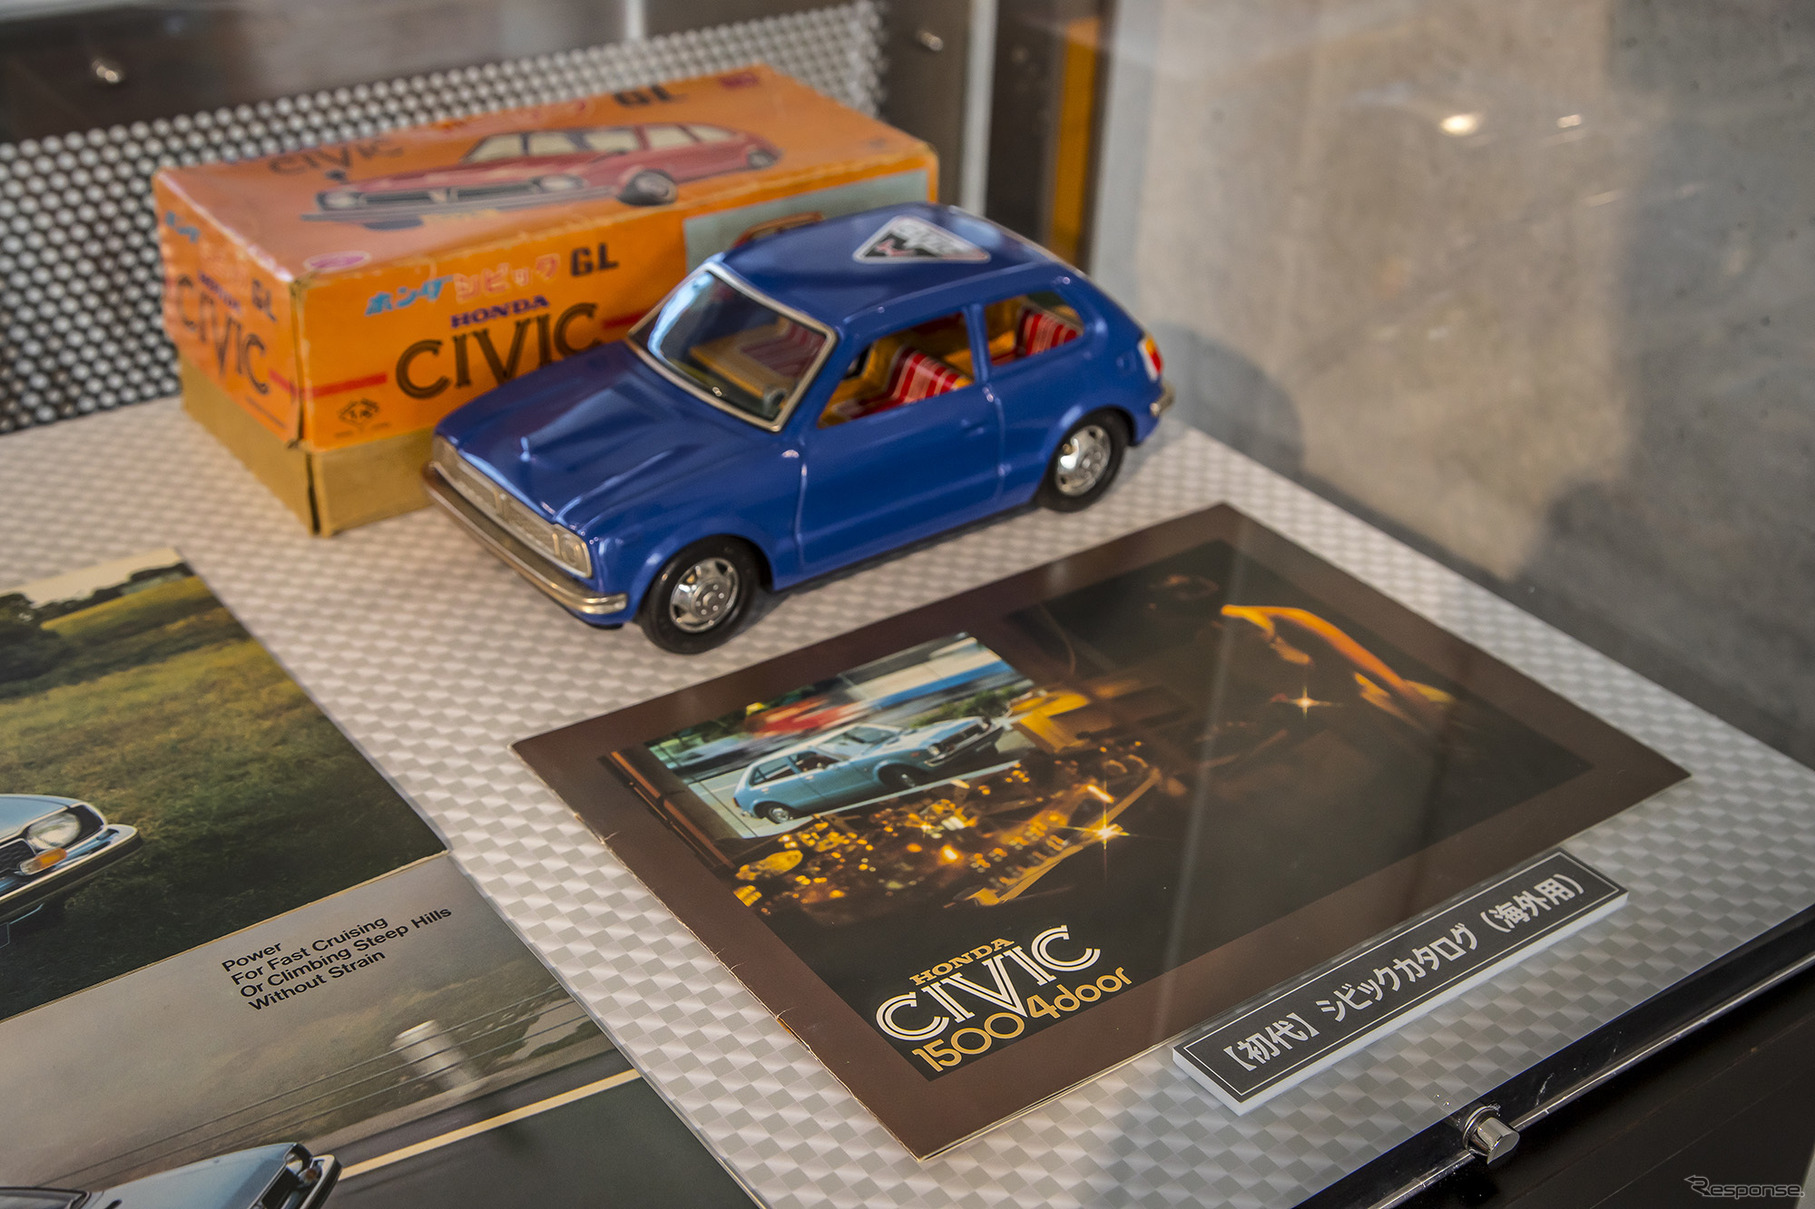 ホンダ・コレクションホールで開催されている企画展“CIVIC WORLD”